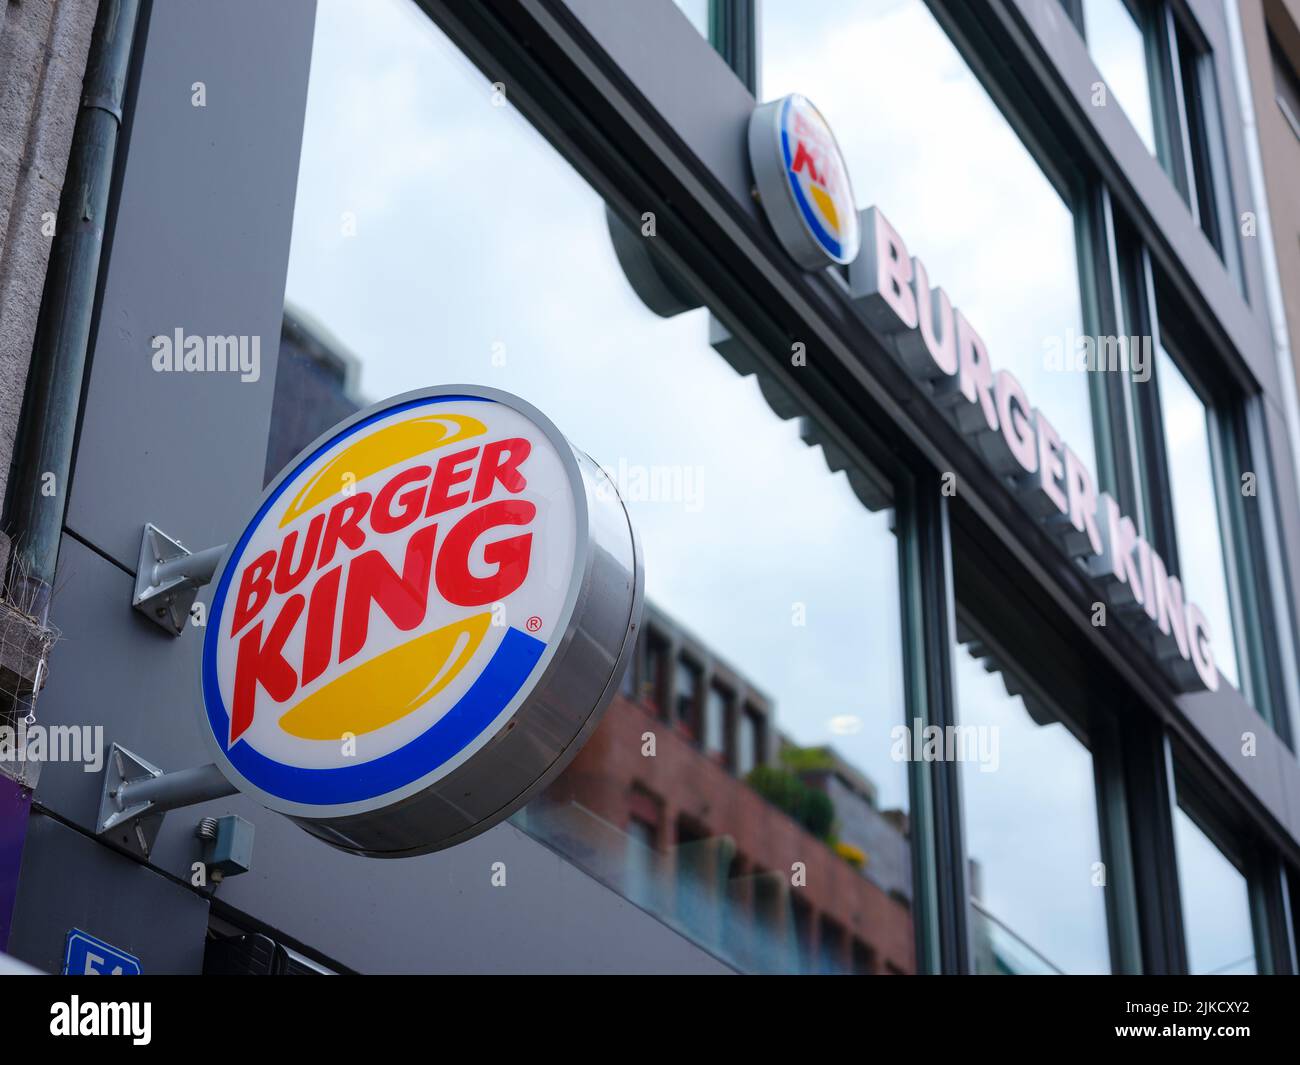 Basilea, Svizzera - Luglio 4 2022: Logo Burger King Restaurant. Burger King, fondato nel 1954, sostiene di servire più di 11 milioni di ospiti al giorno in tutto il mondo. Nella città svizzera Foto Stock